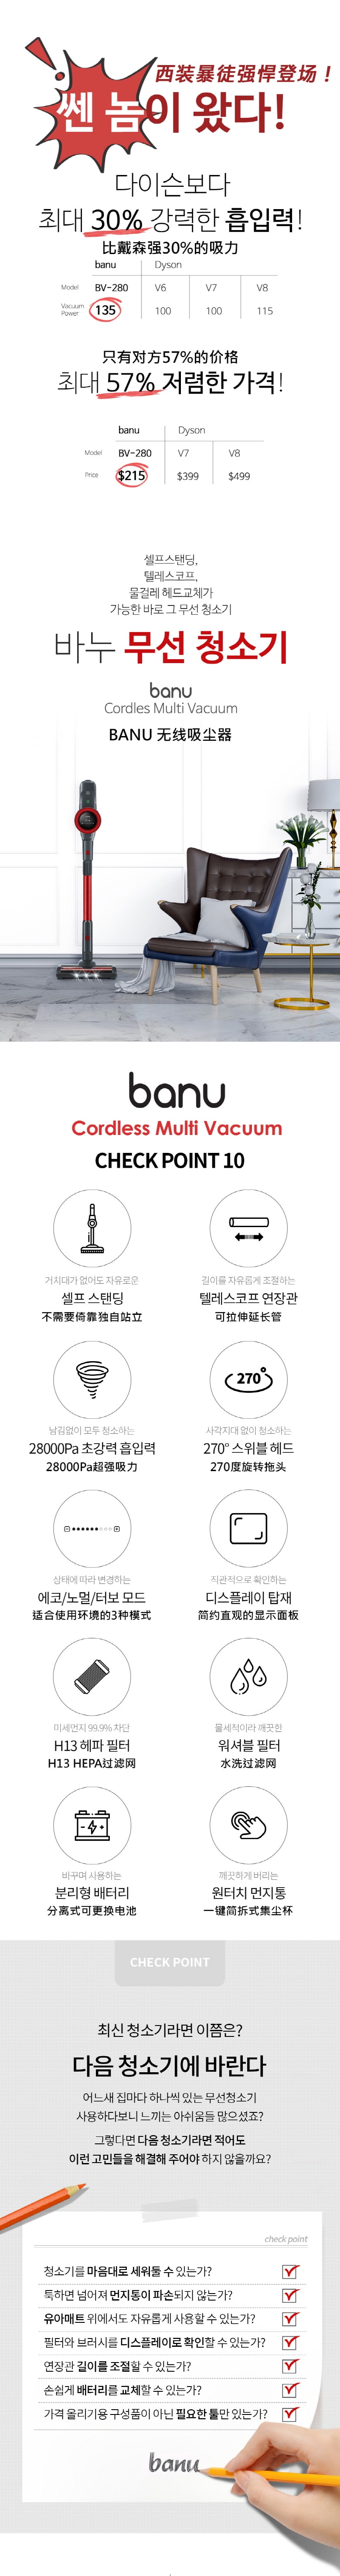 韓國 BANU 強力手持式吸塵器 比戴森更強 28 Kpa (可選拖把頭)